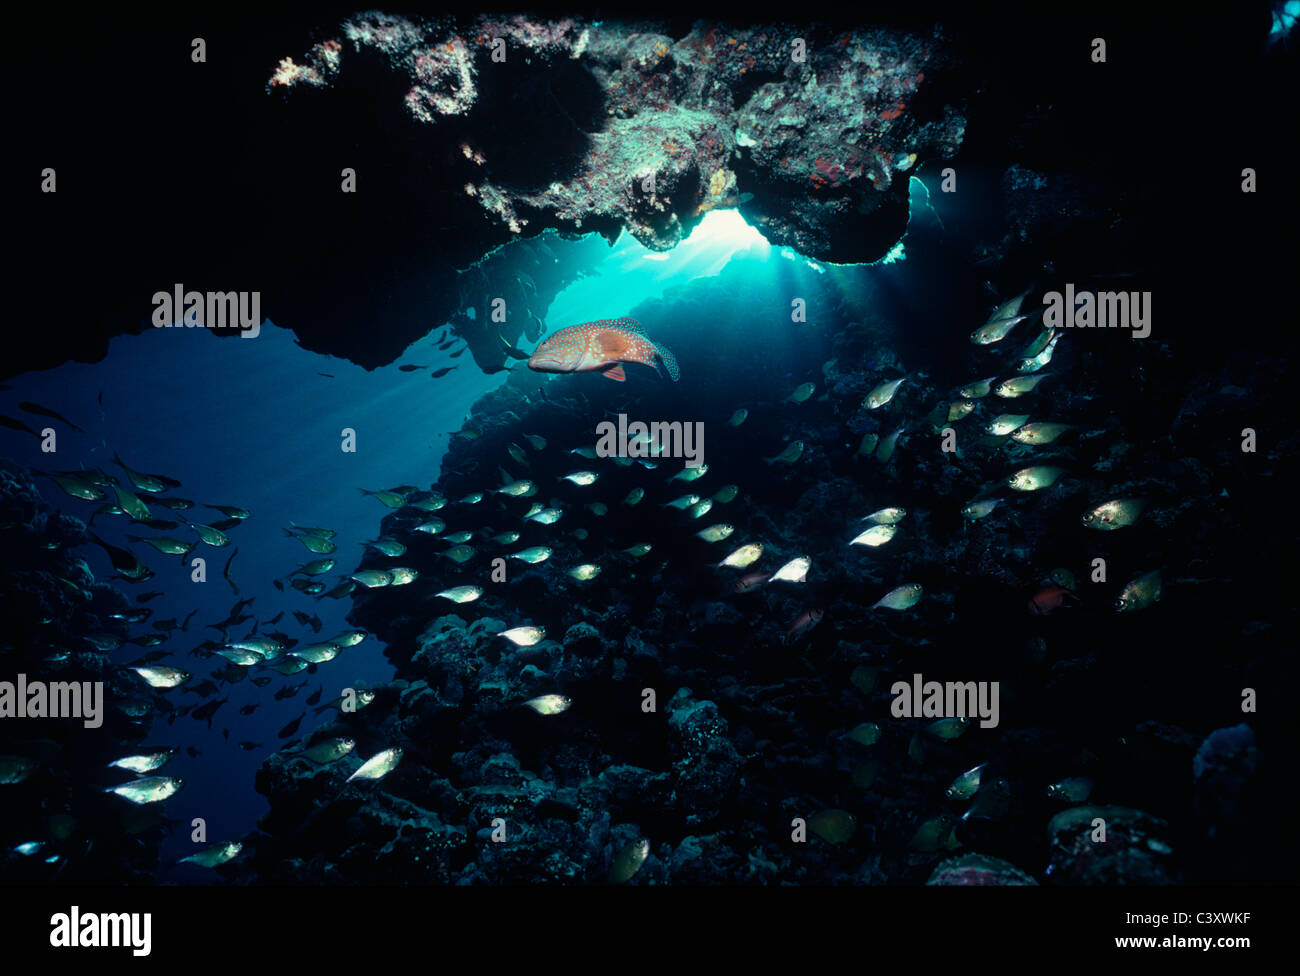 Korallen-Zackenbarsch (Cephalopholis Oligosticta) ernähren sich von Vanikoro Kehrmaschinen (Parapriacanthus guentheri) am Eingang zu einer Höhle. Ägypten Stockfoto